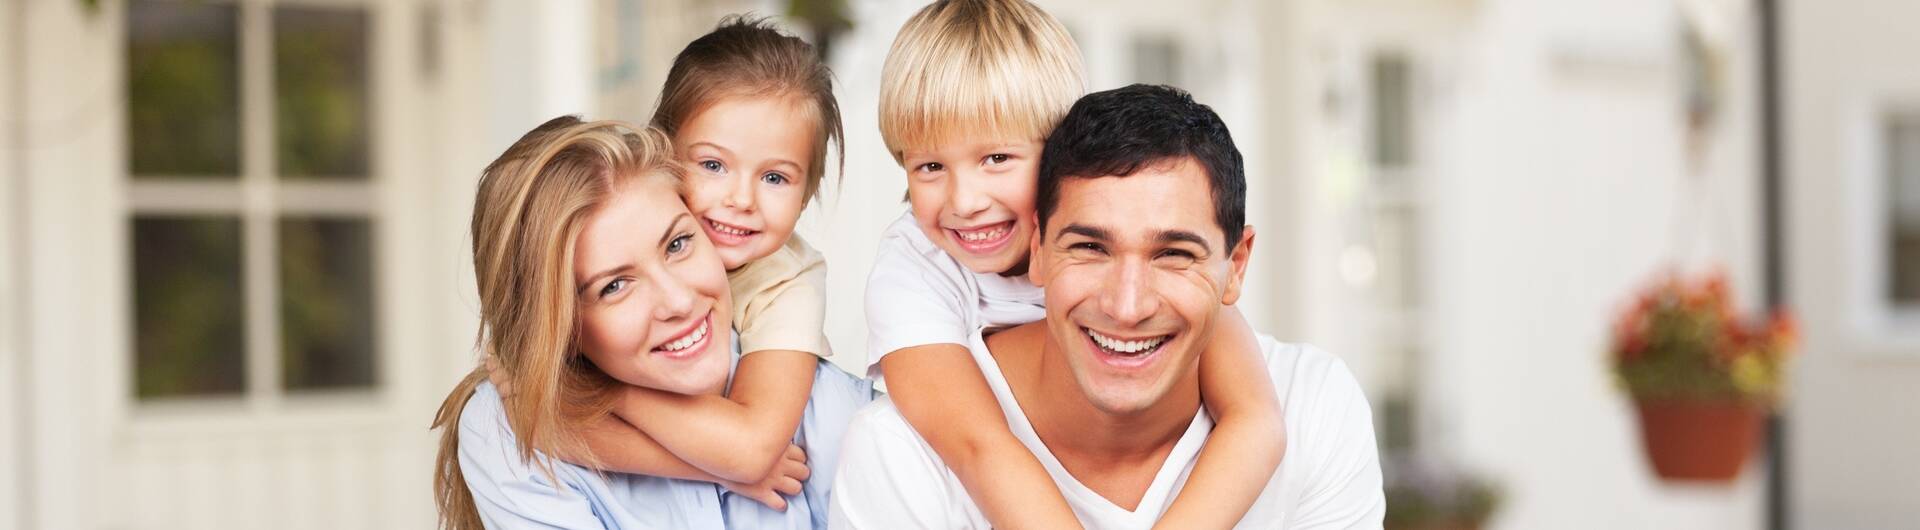 Junges glückliches Paar mit zwei Kindern in einem Apartment.